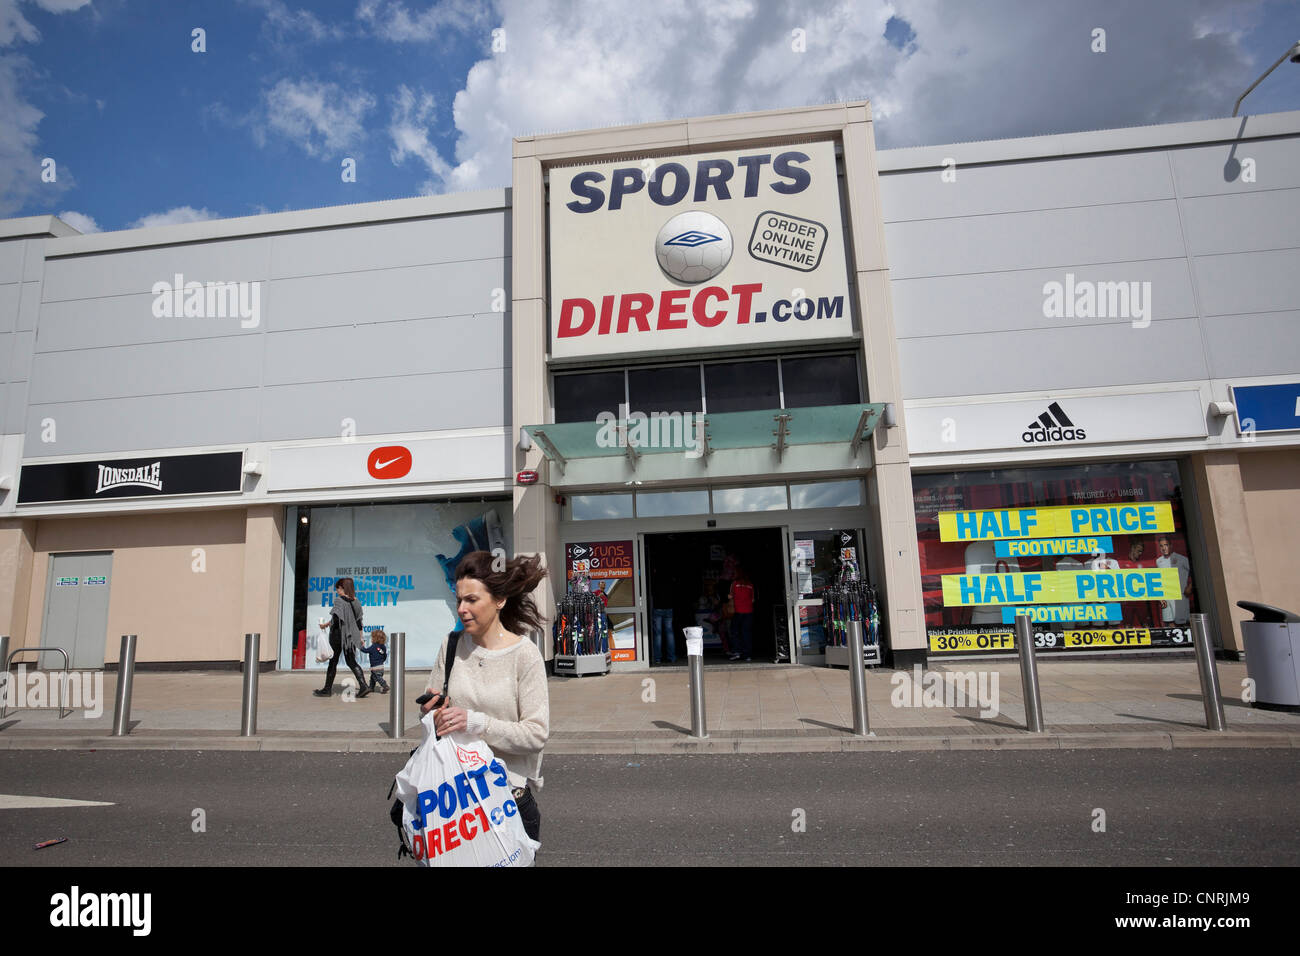 Sports Direct.com shop, Borehamwood, Hertfordshire, England, UK Stock Photo  - Alamy